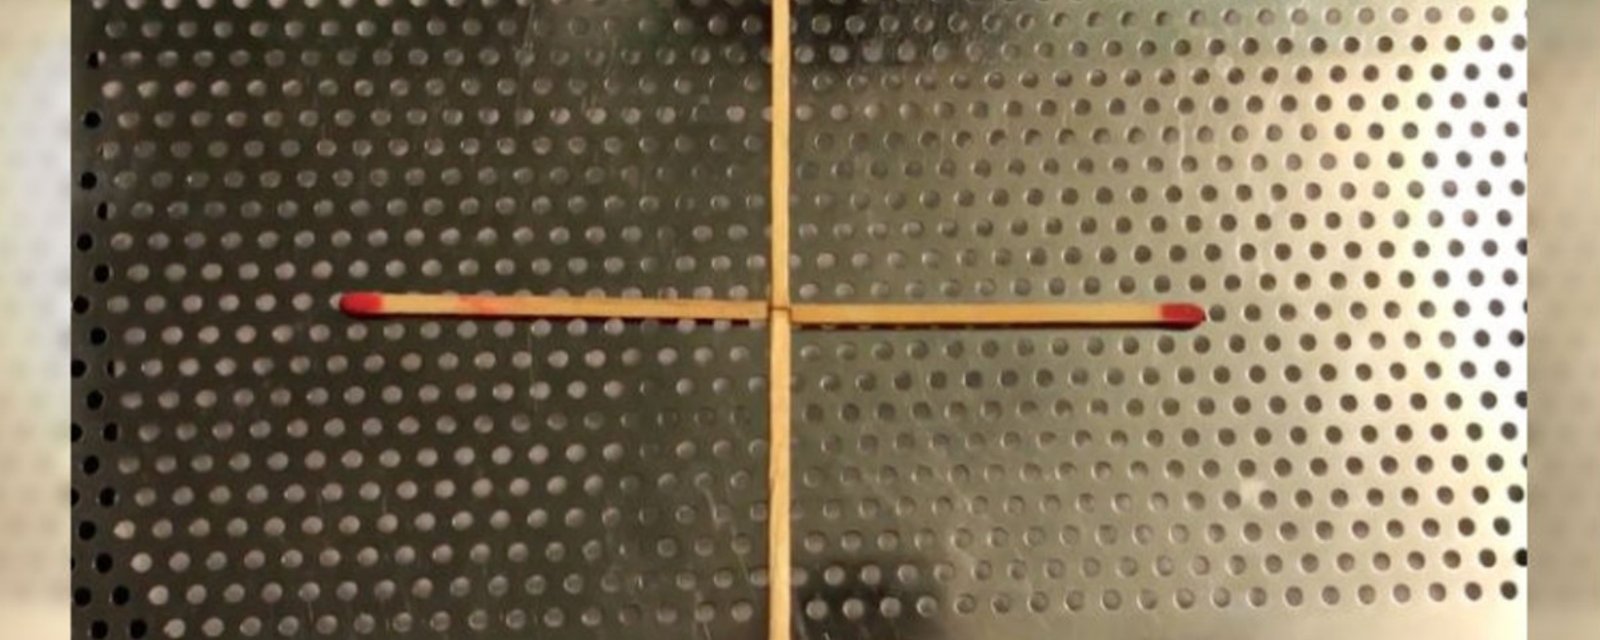 En ne déplaçant qu’une seule allumette, pouvez-vous former un carré avec ces 4 allumettes?